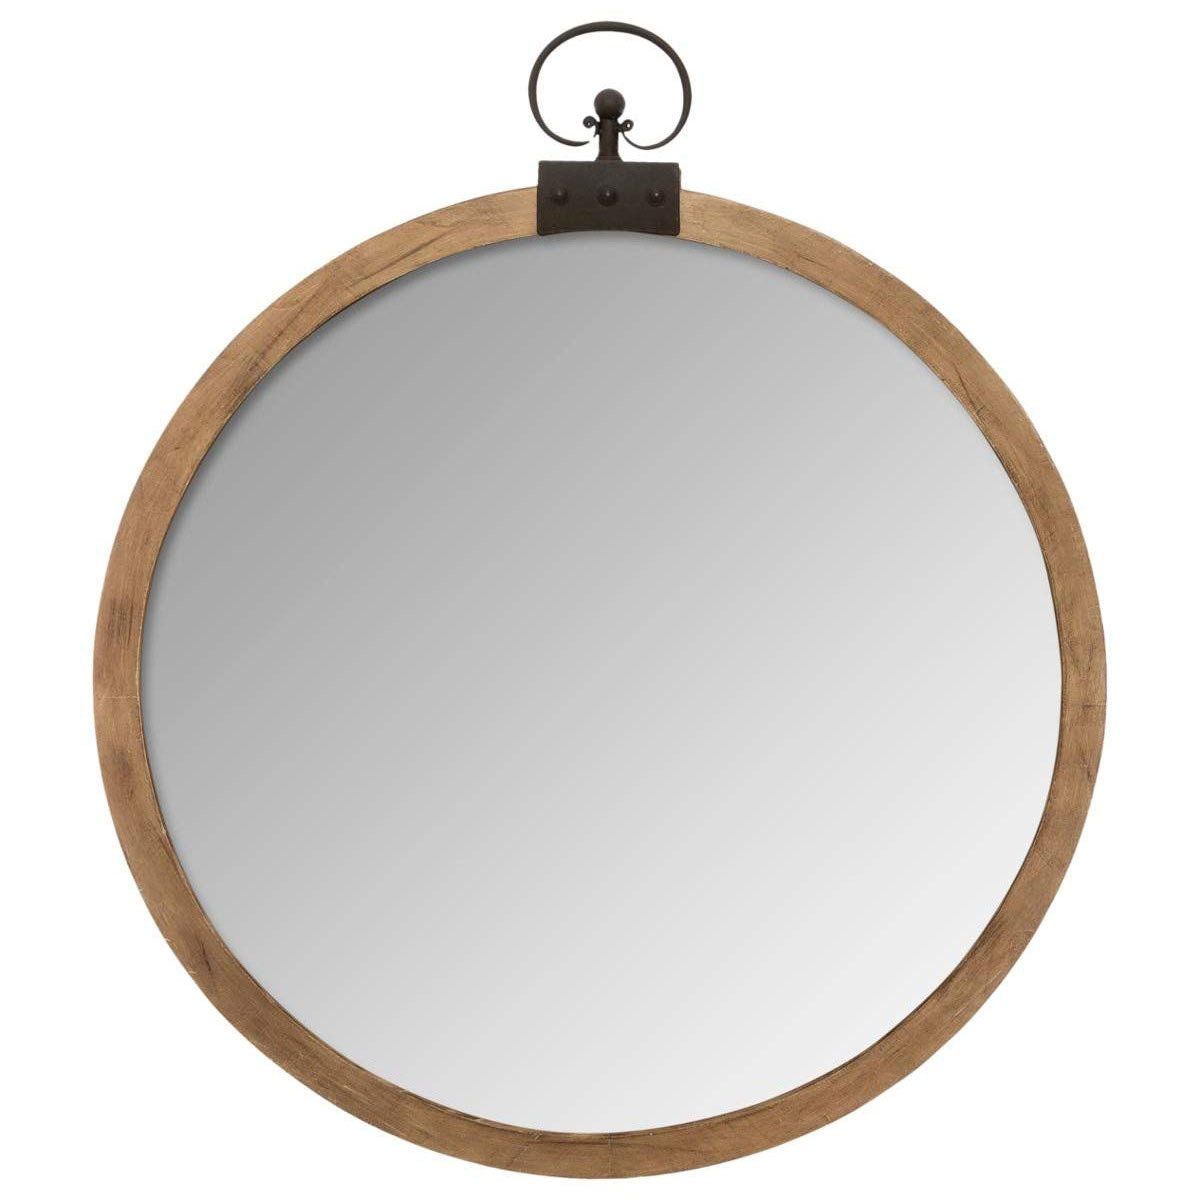 Atmosphera Ozdobné zrcadlo s dřevěným rámem, průměr 74 cm - EDAXO.CZ s.r.o.